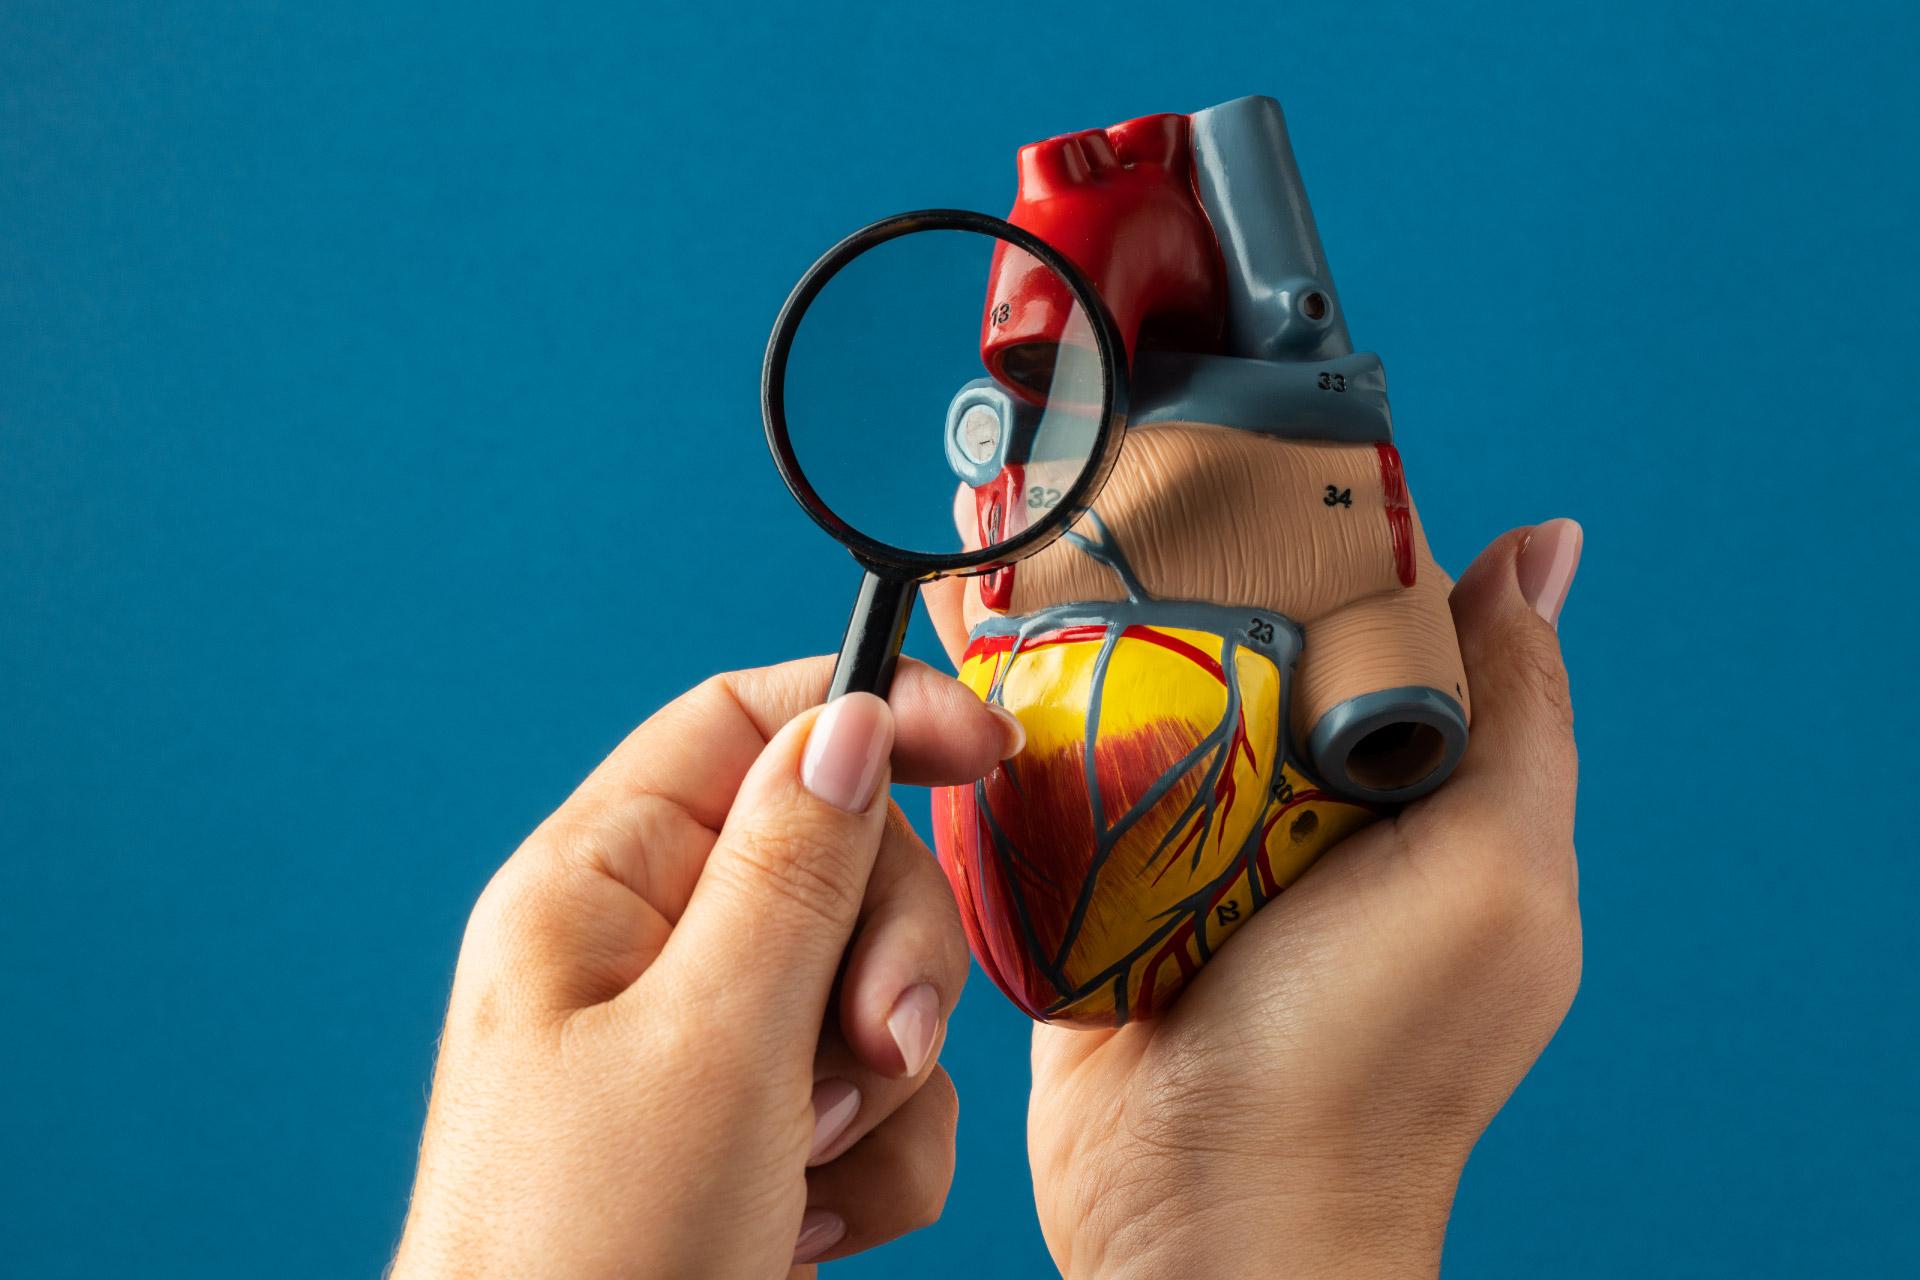 टीएवीआर तक क्रांतिकारी पहुंच: बजाज फाइनेंस आसान ईएमआई के साथ हृदय संबंधी सर्जरी में बदलाव ला रहा है